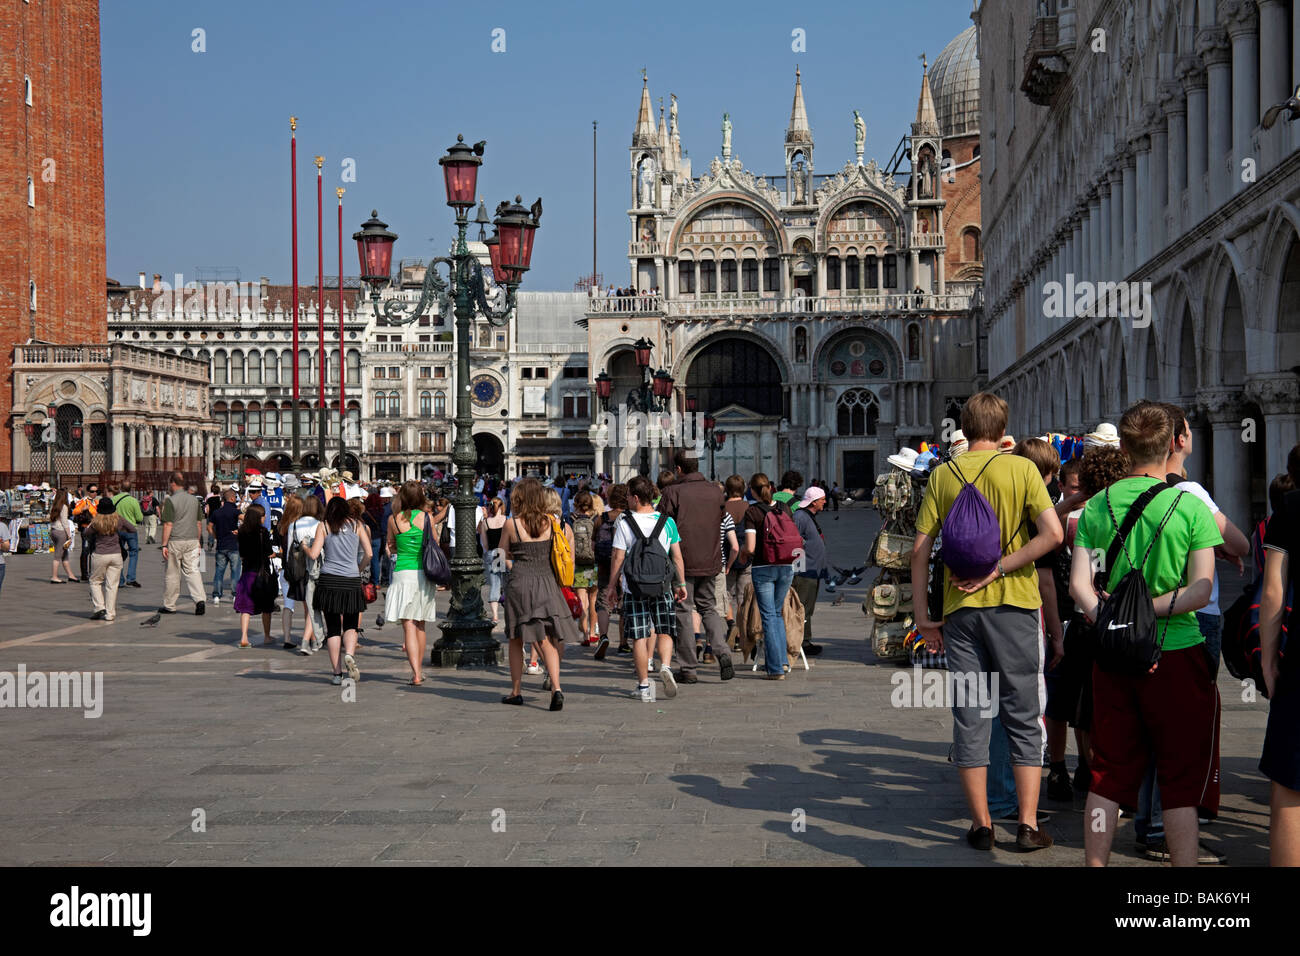 Piazetta 'Piazza San Marco' Venice Italy tourist tourism Stock Photo